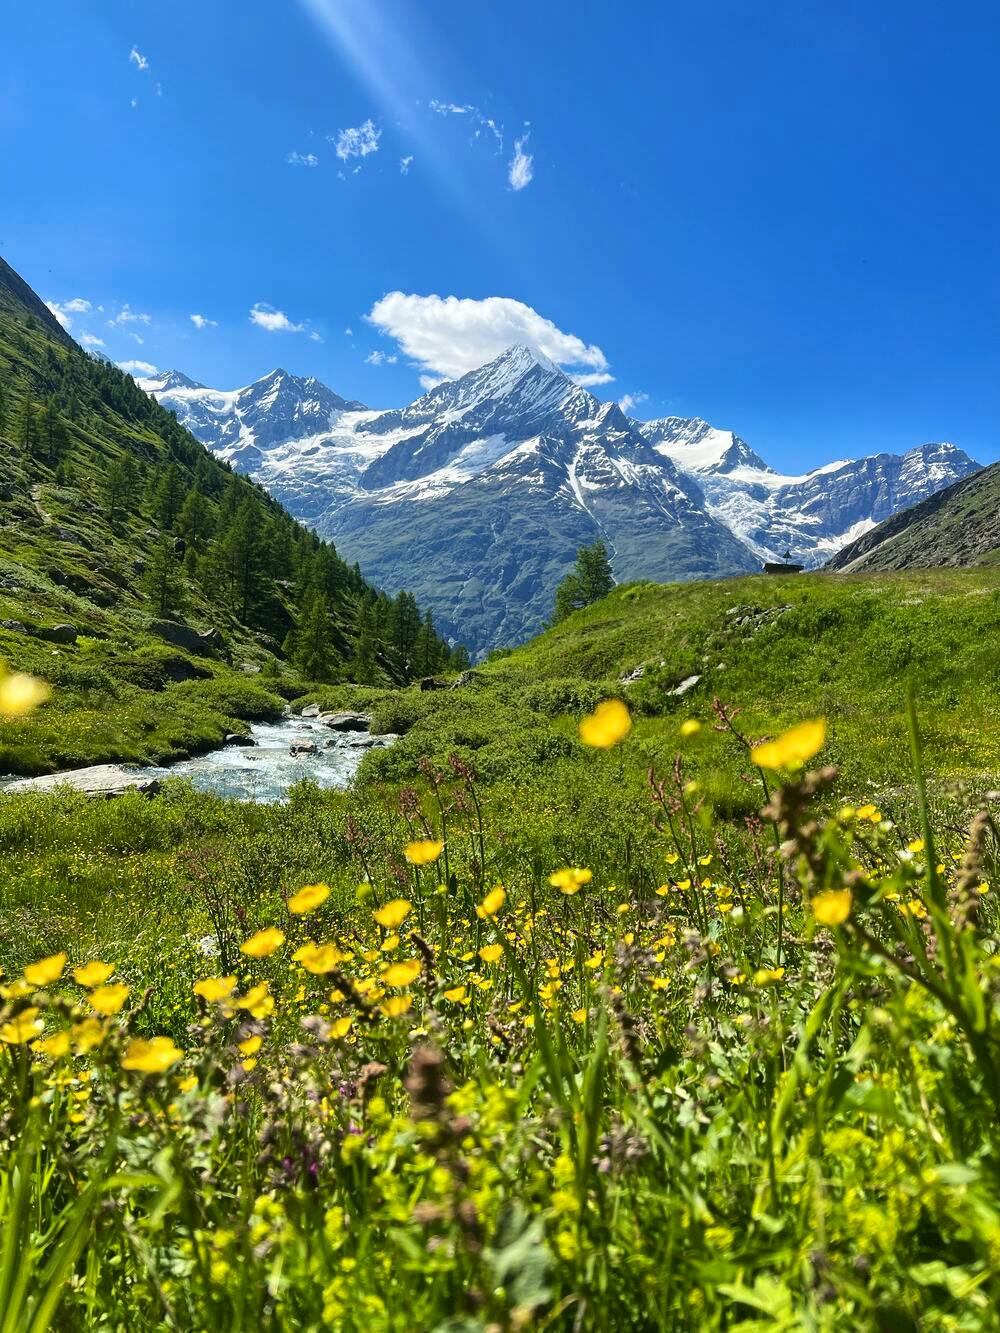 Summery hiking trails in Switzerland